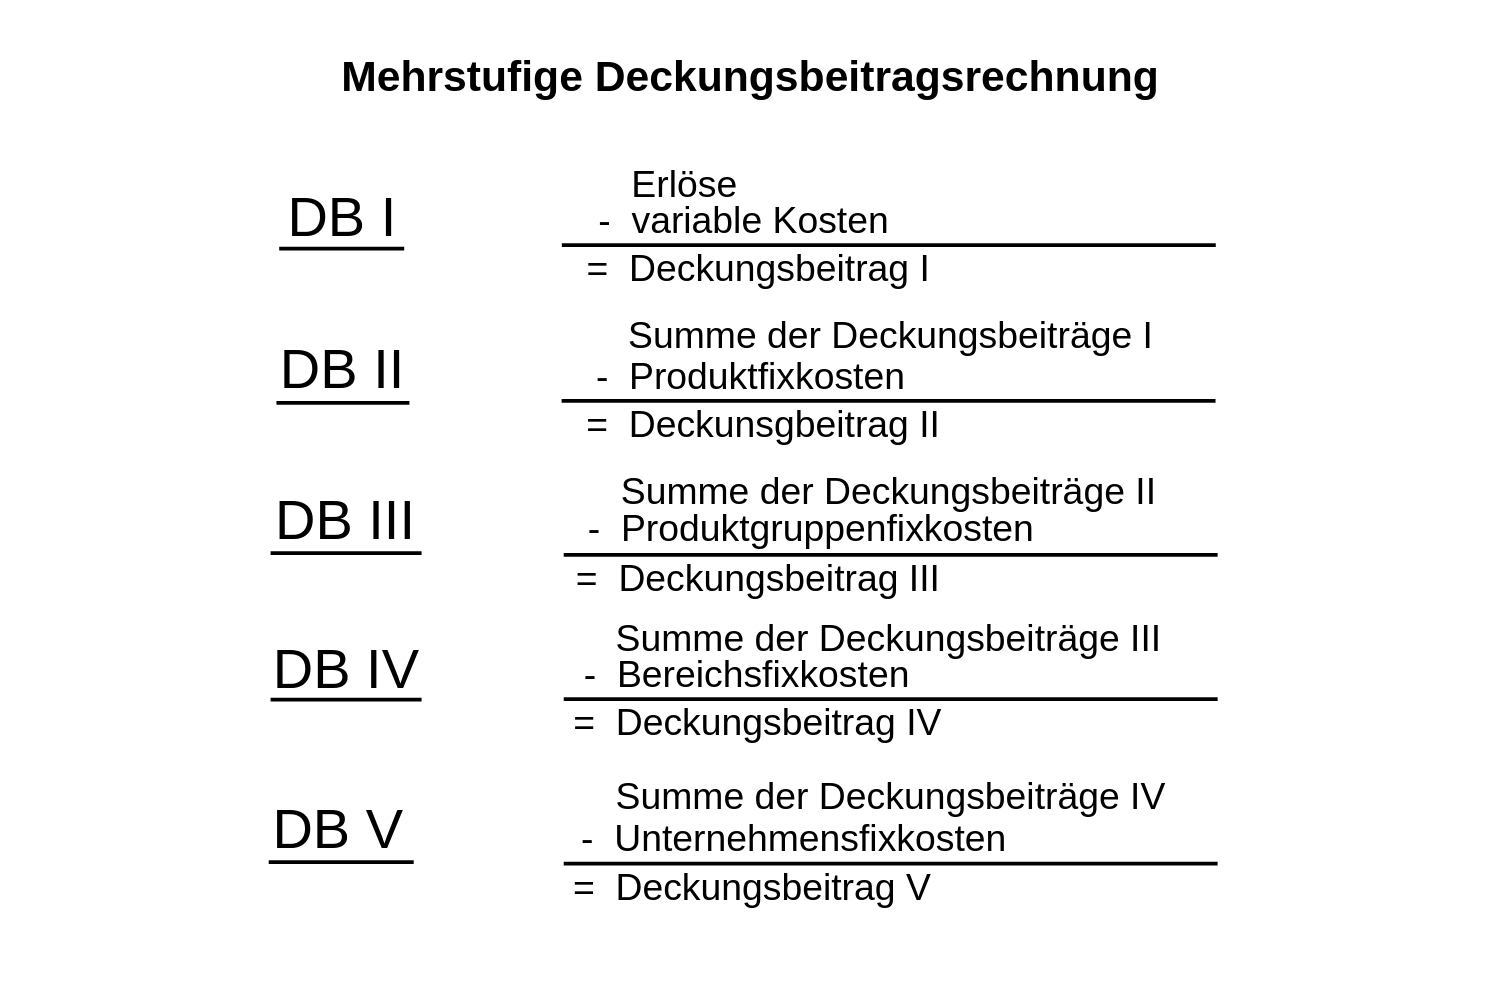 deckungsbeitrag-db-1-2-3-4-5